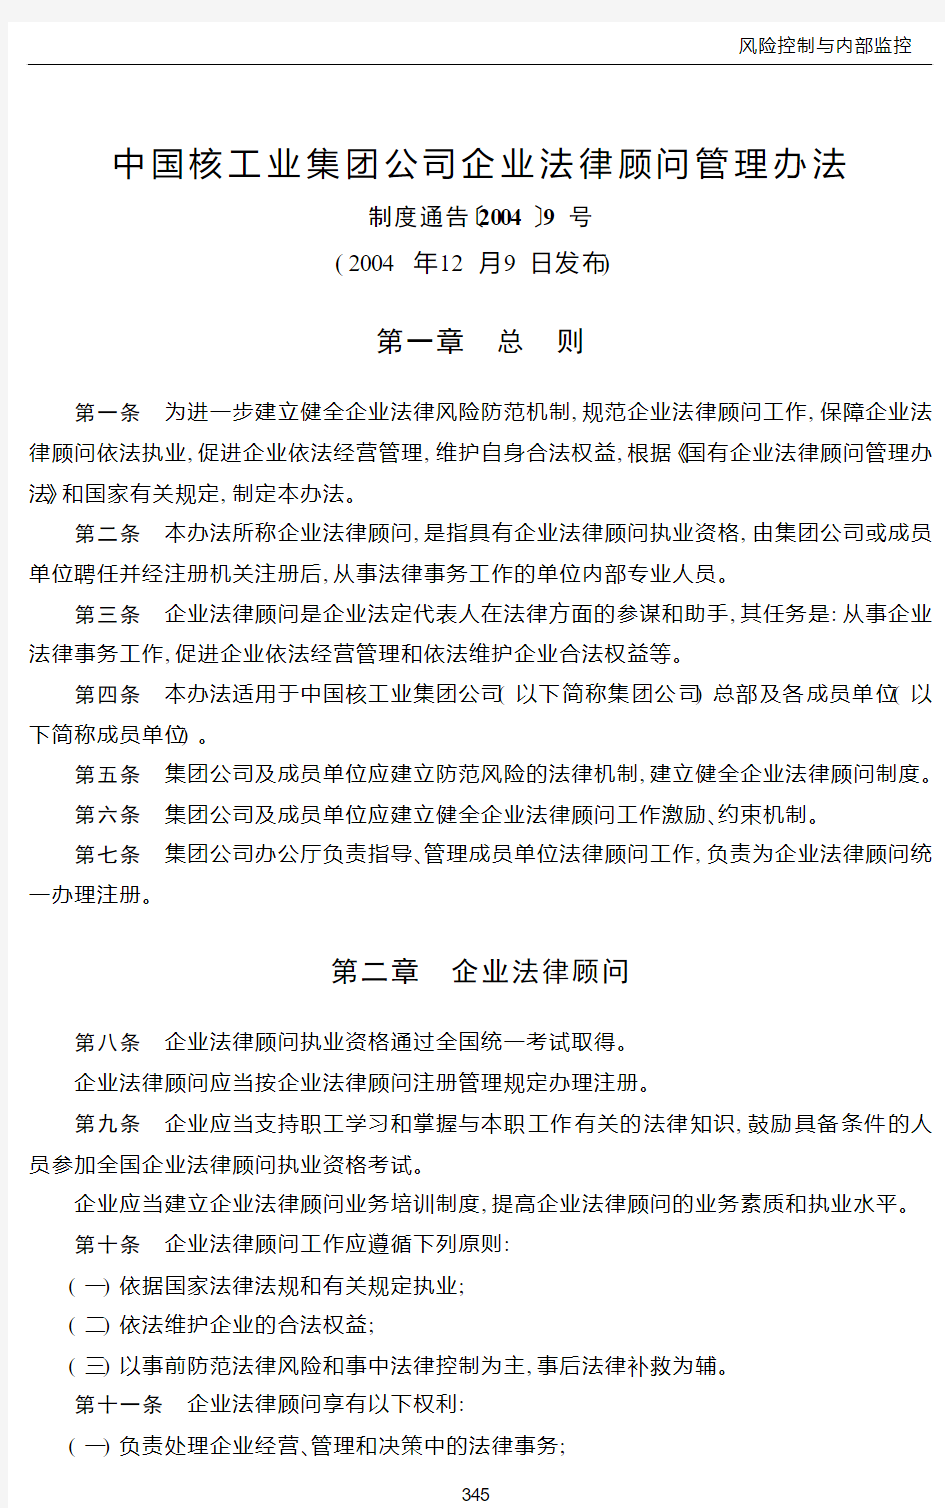 中国核工业集团公司企业法律顾问管理办法